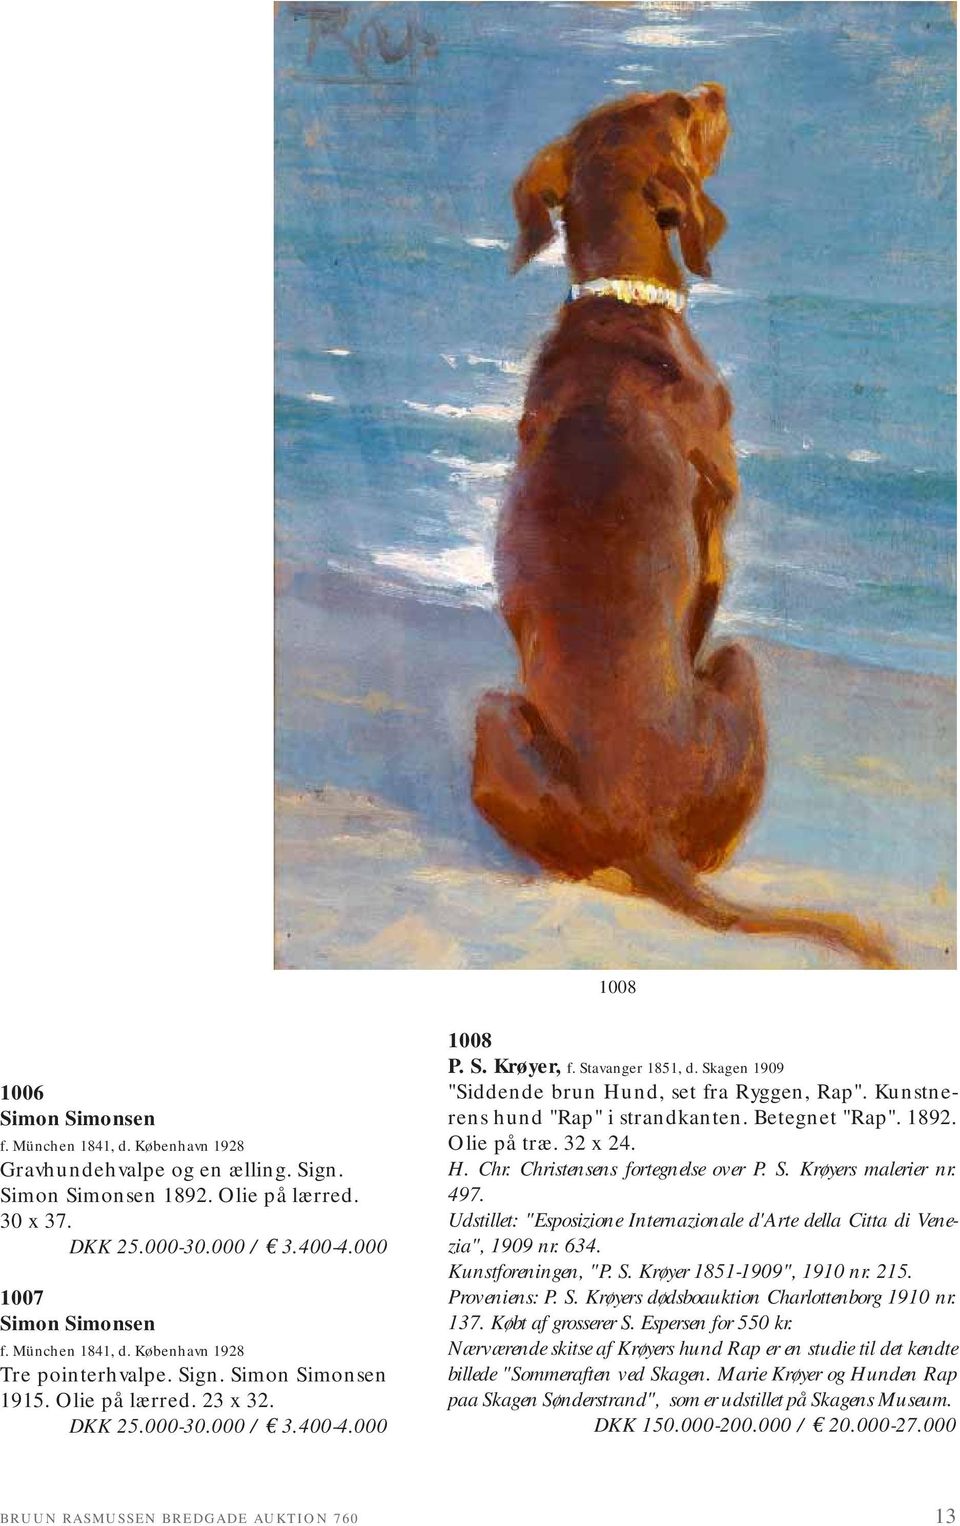 Skagen 1909 "Siddende brun Hund, set fra Ryggen, Rap". Kunstnerens hund "Rap" i strandkanten. Betegnet "Rap". 1892. Olie på træ. 32 x 24. H. Chr. Christensens fortegnelse over P. S.